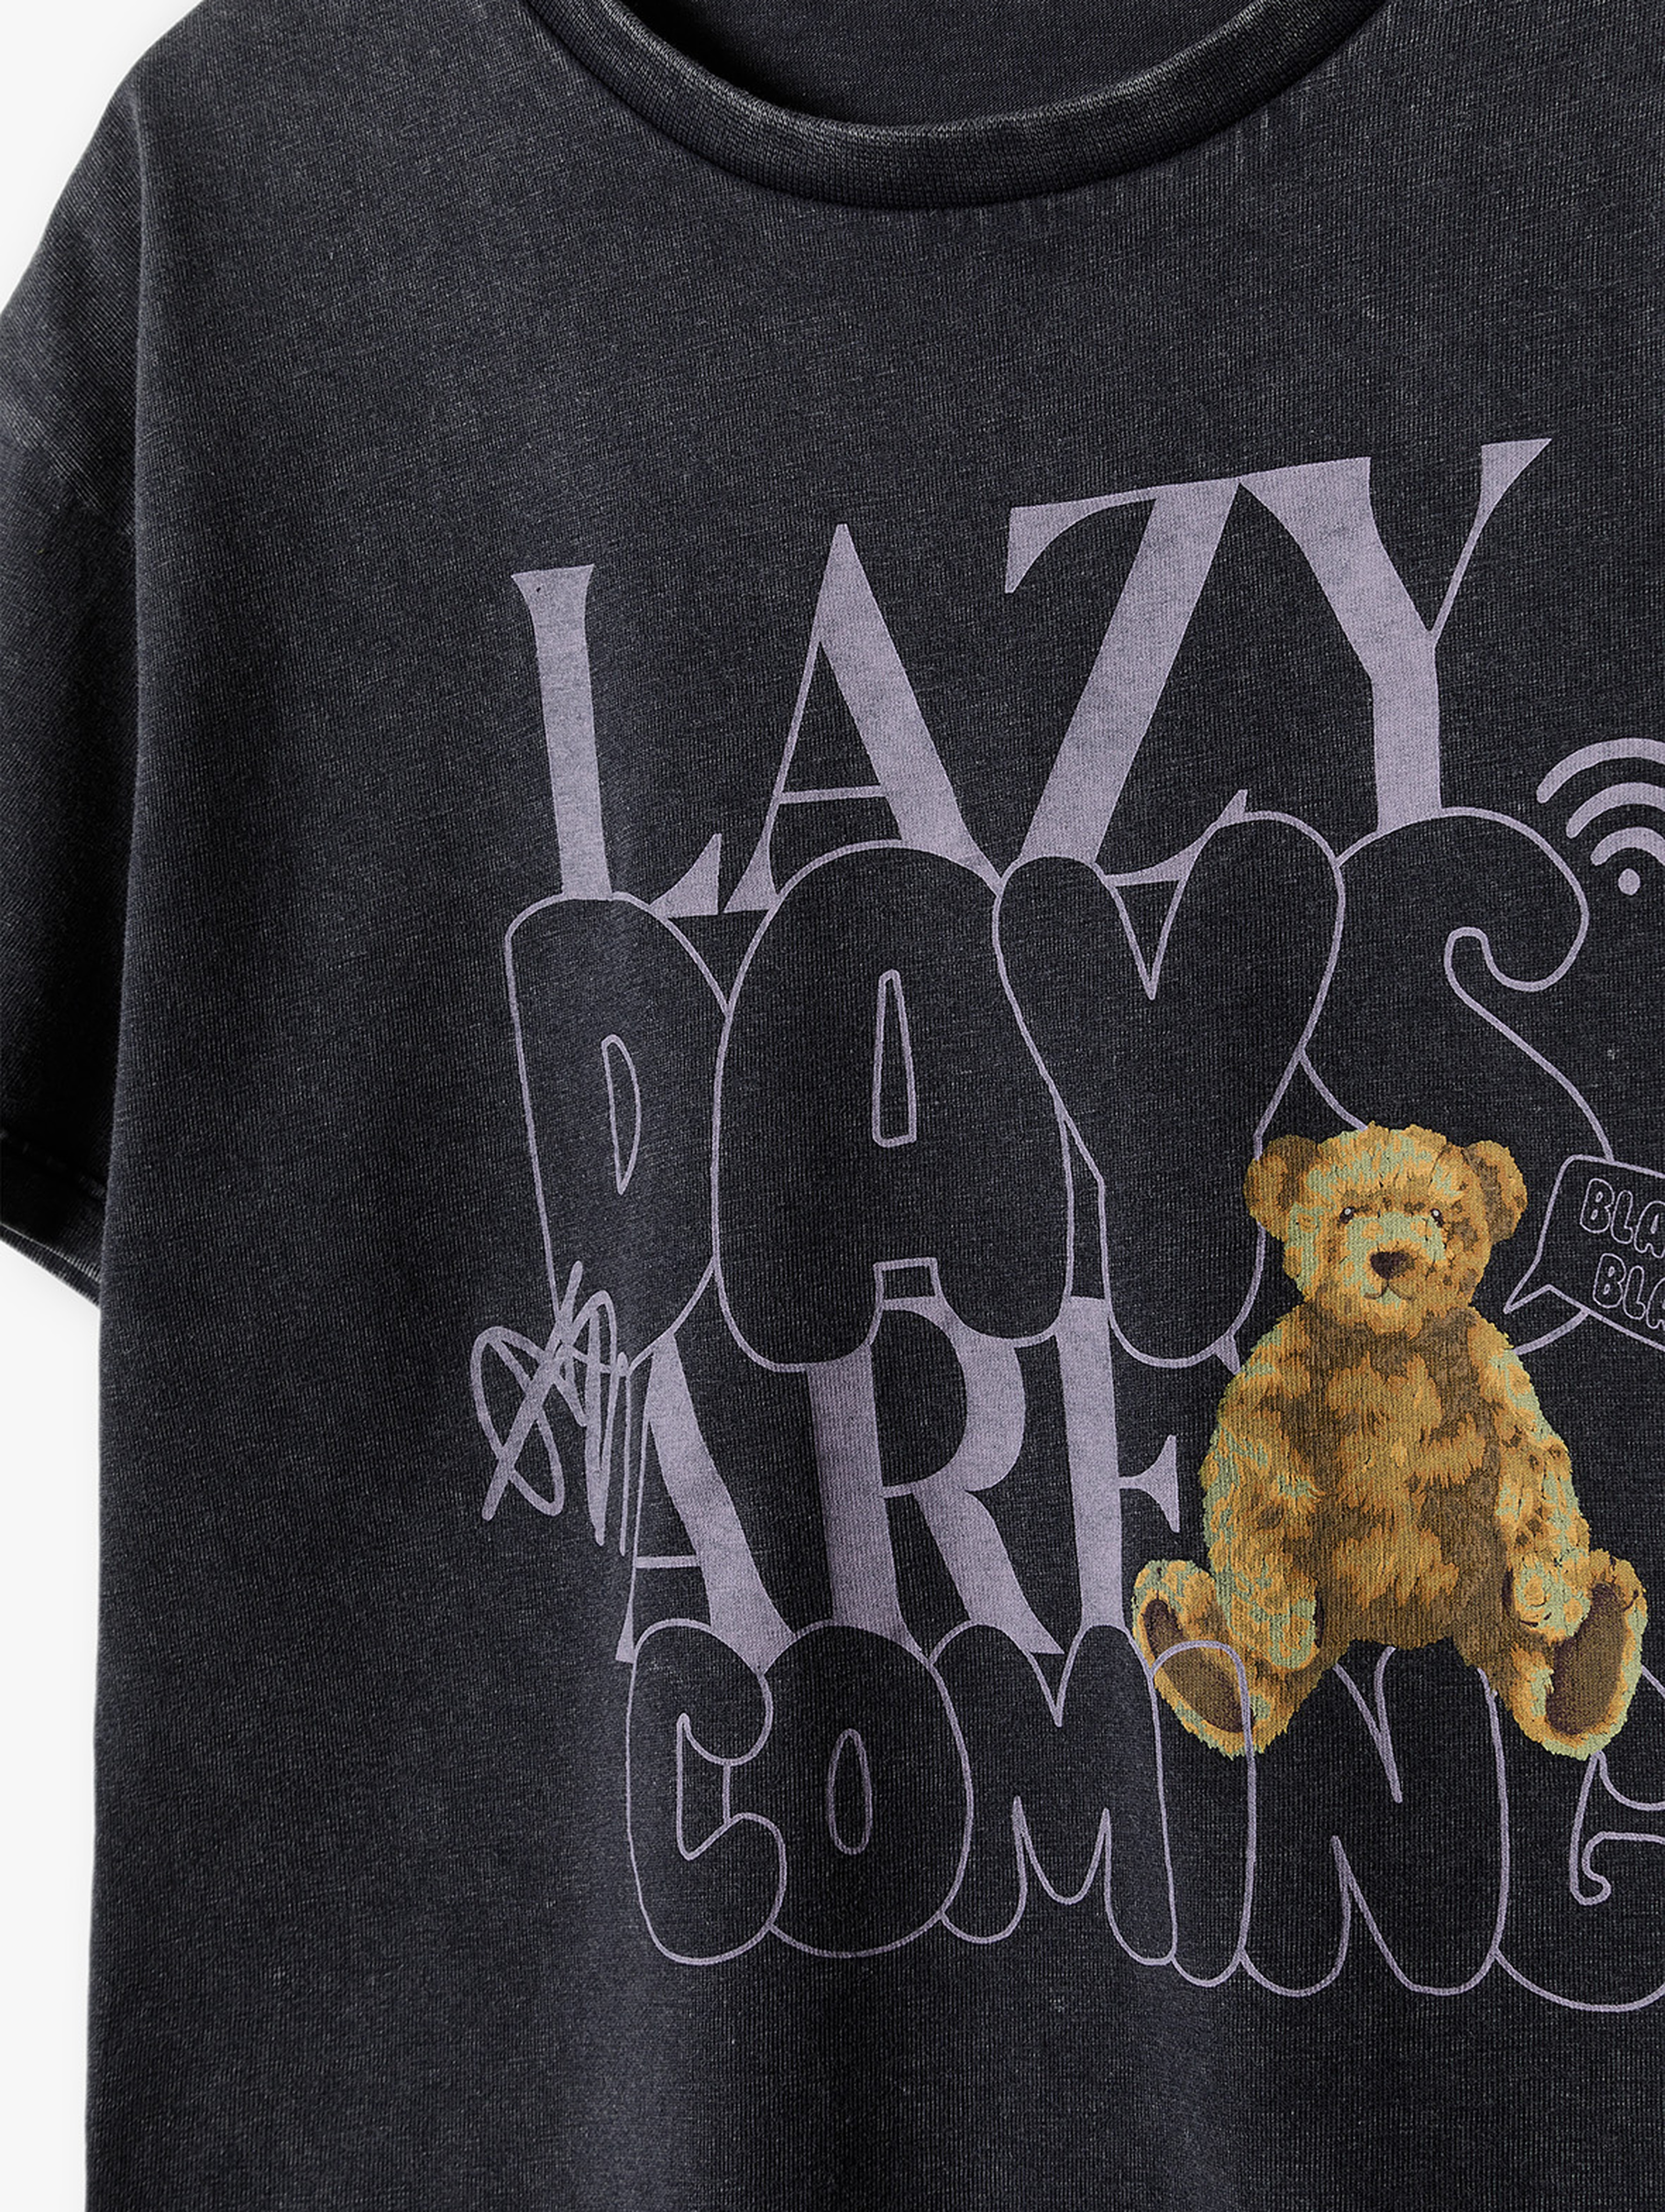 T-shirt dziewczęce grafitowy - Lazy Days - Lincoln&Sharks